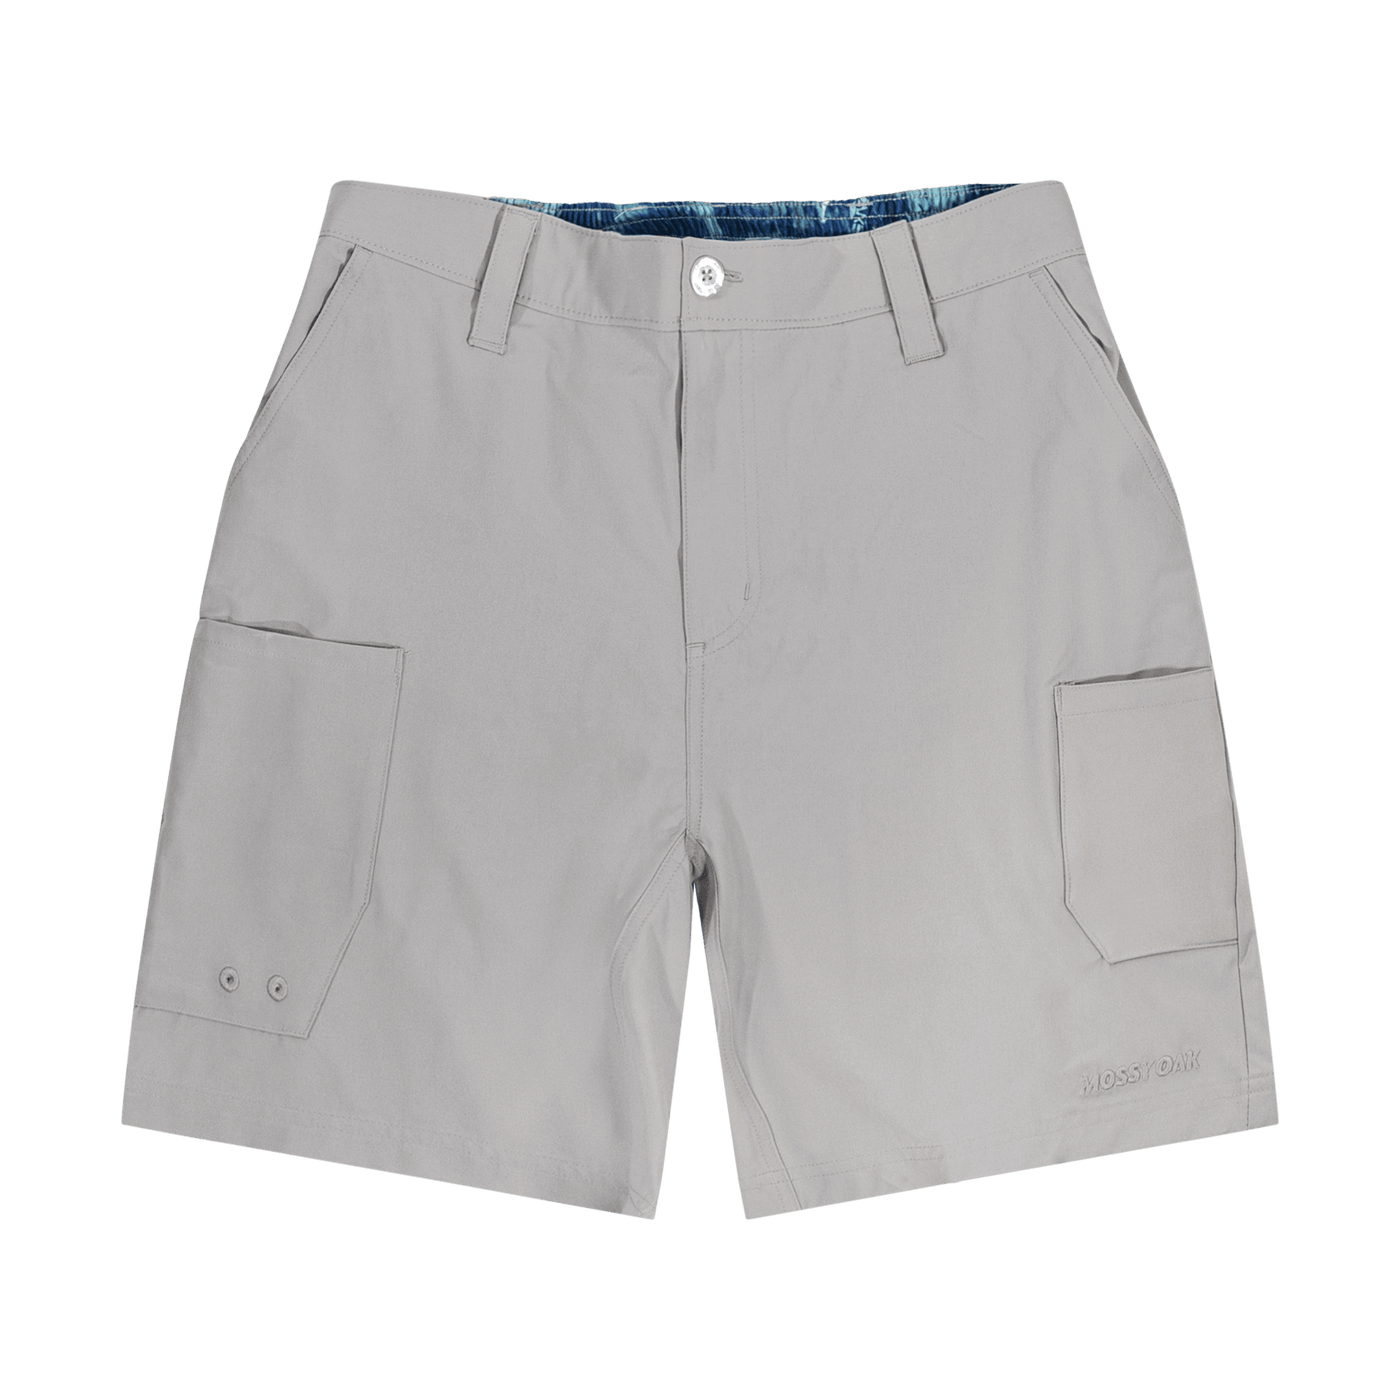 Realtree Fishing Shorts Mens Small Khaki Gray Polyester, 48% OFF